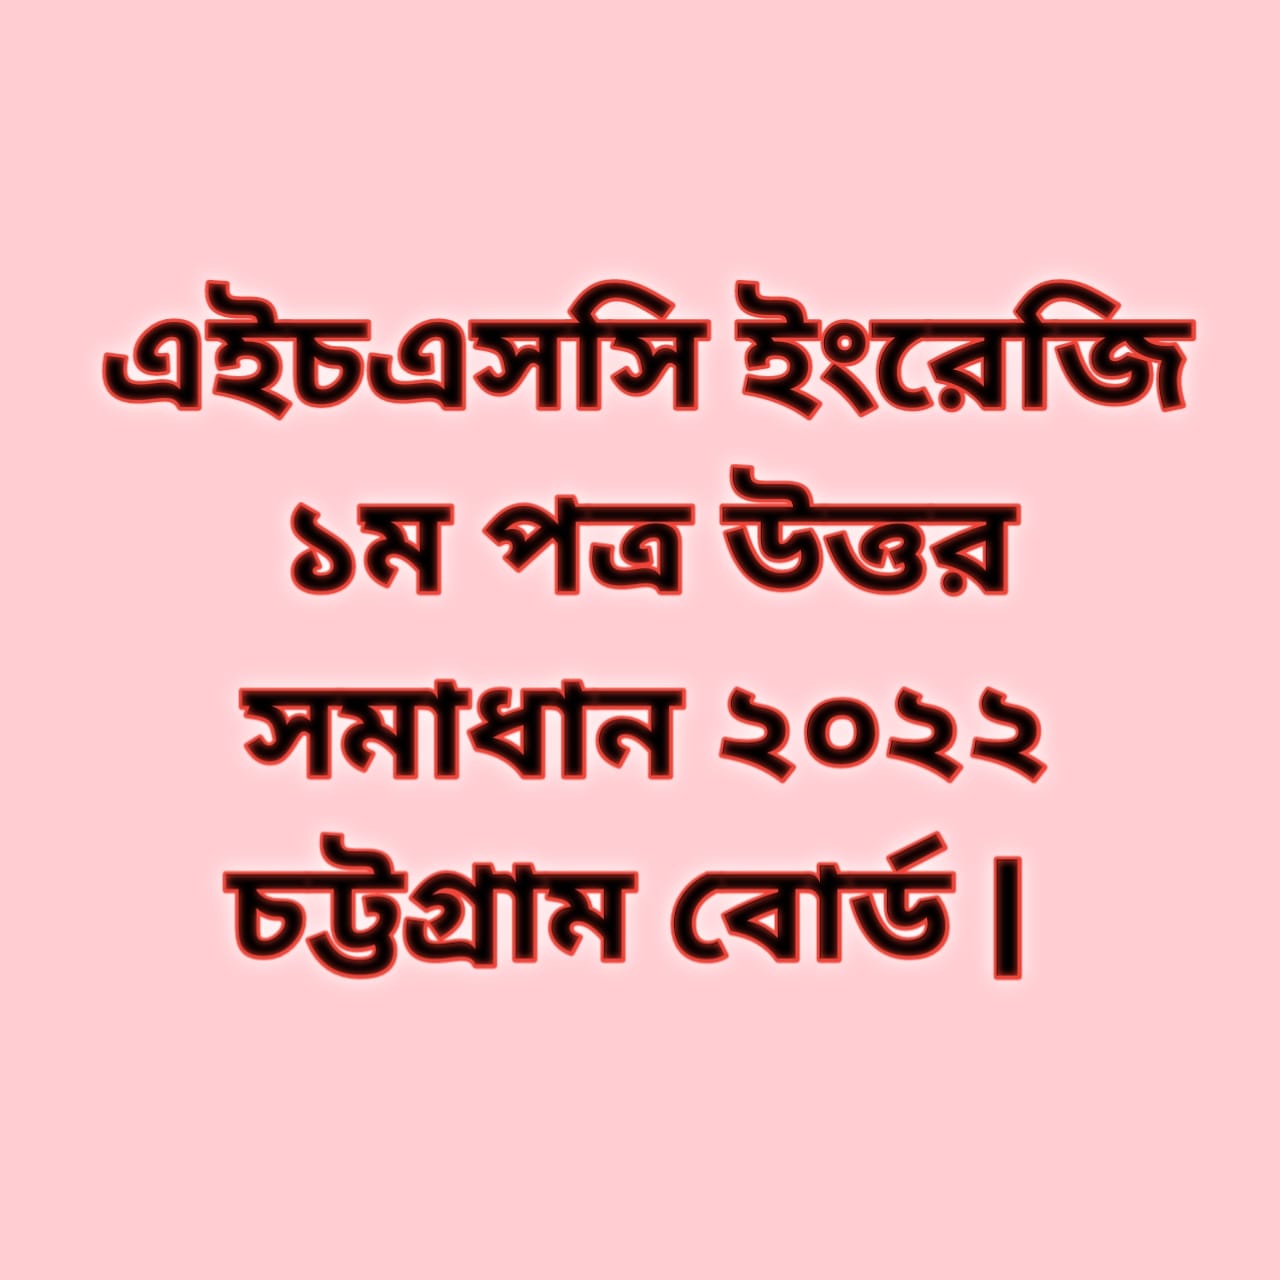 এইচএসসি ইংরেজি ১ম পত্র উত্তর সমাধান ২০২২ চট্টগ্রাম বোর্ড | hsc English 1st paper solution answer 2022 Chittagong Board